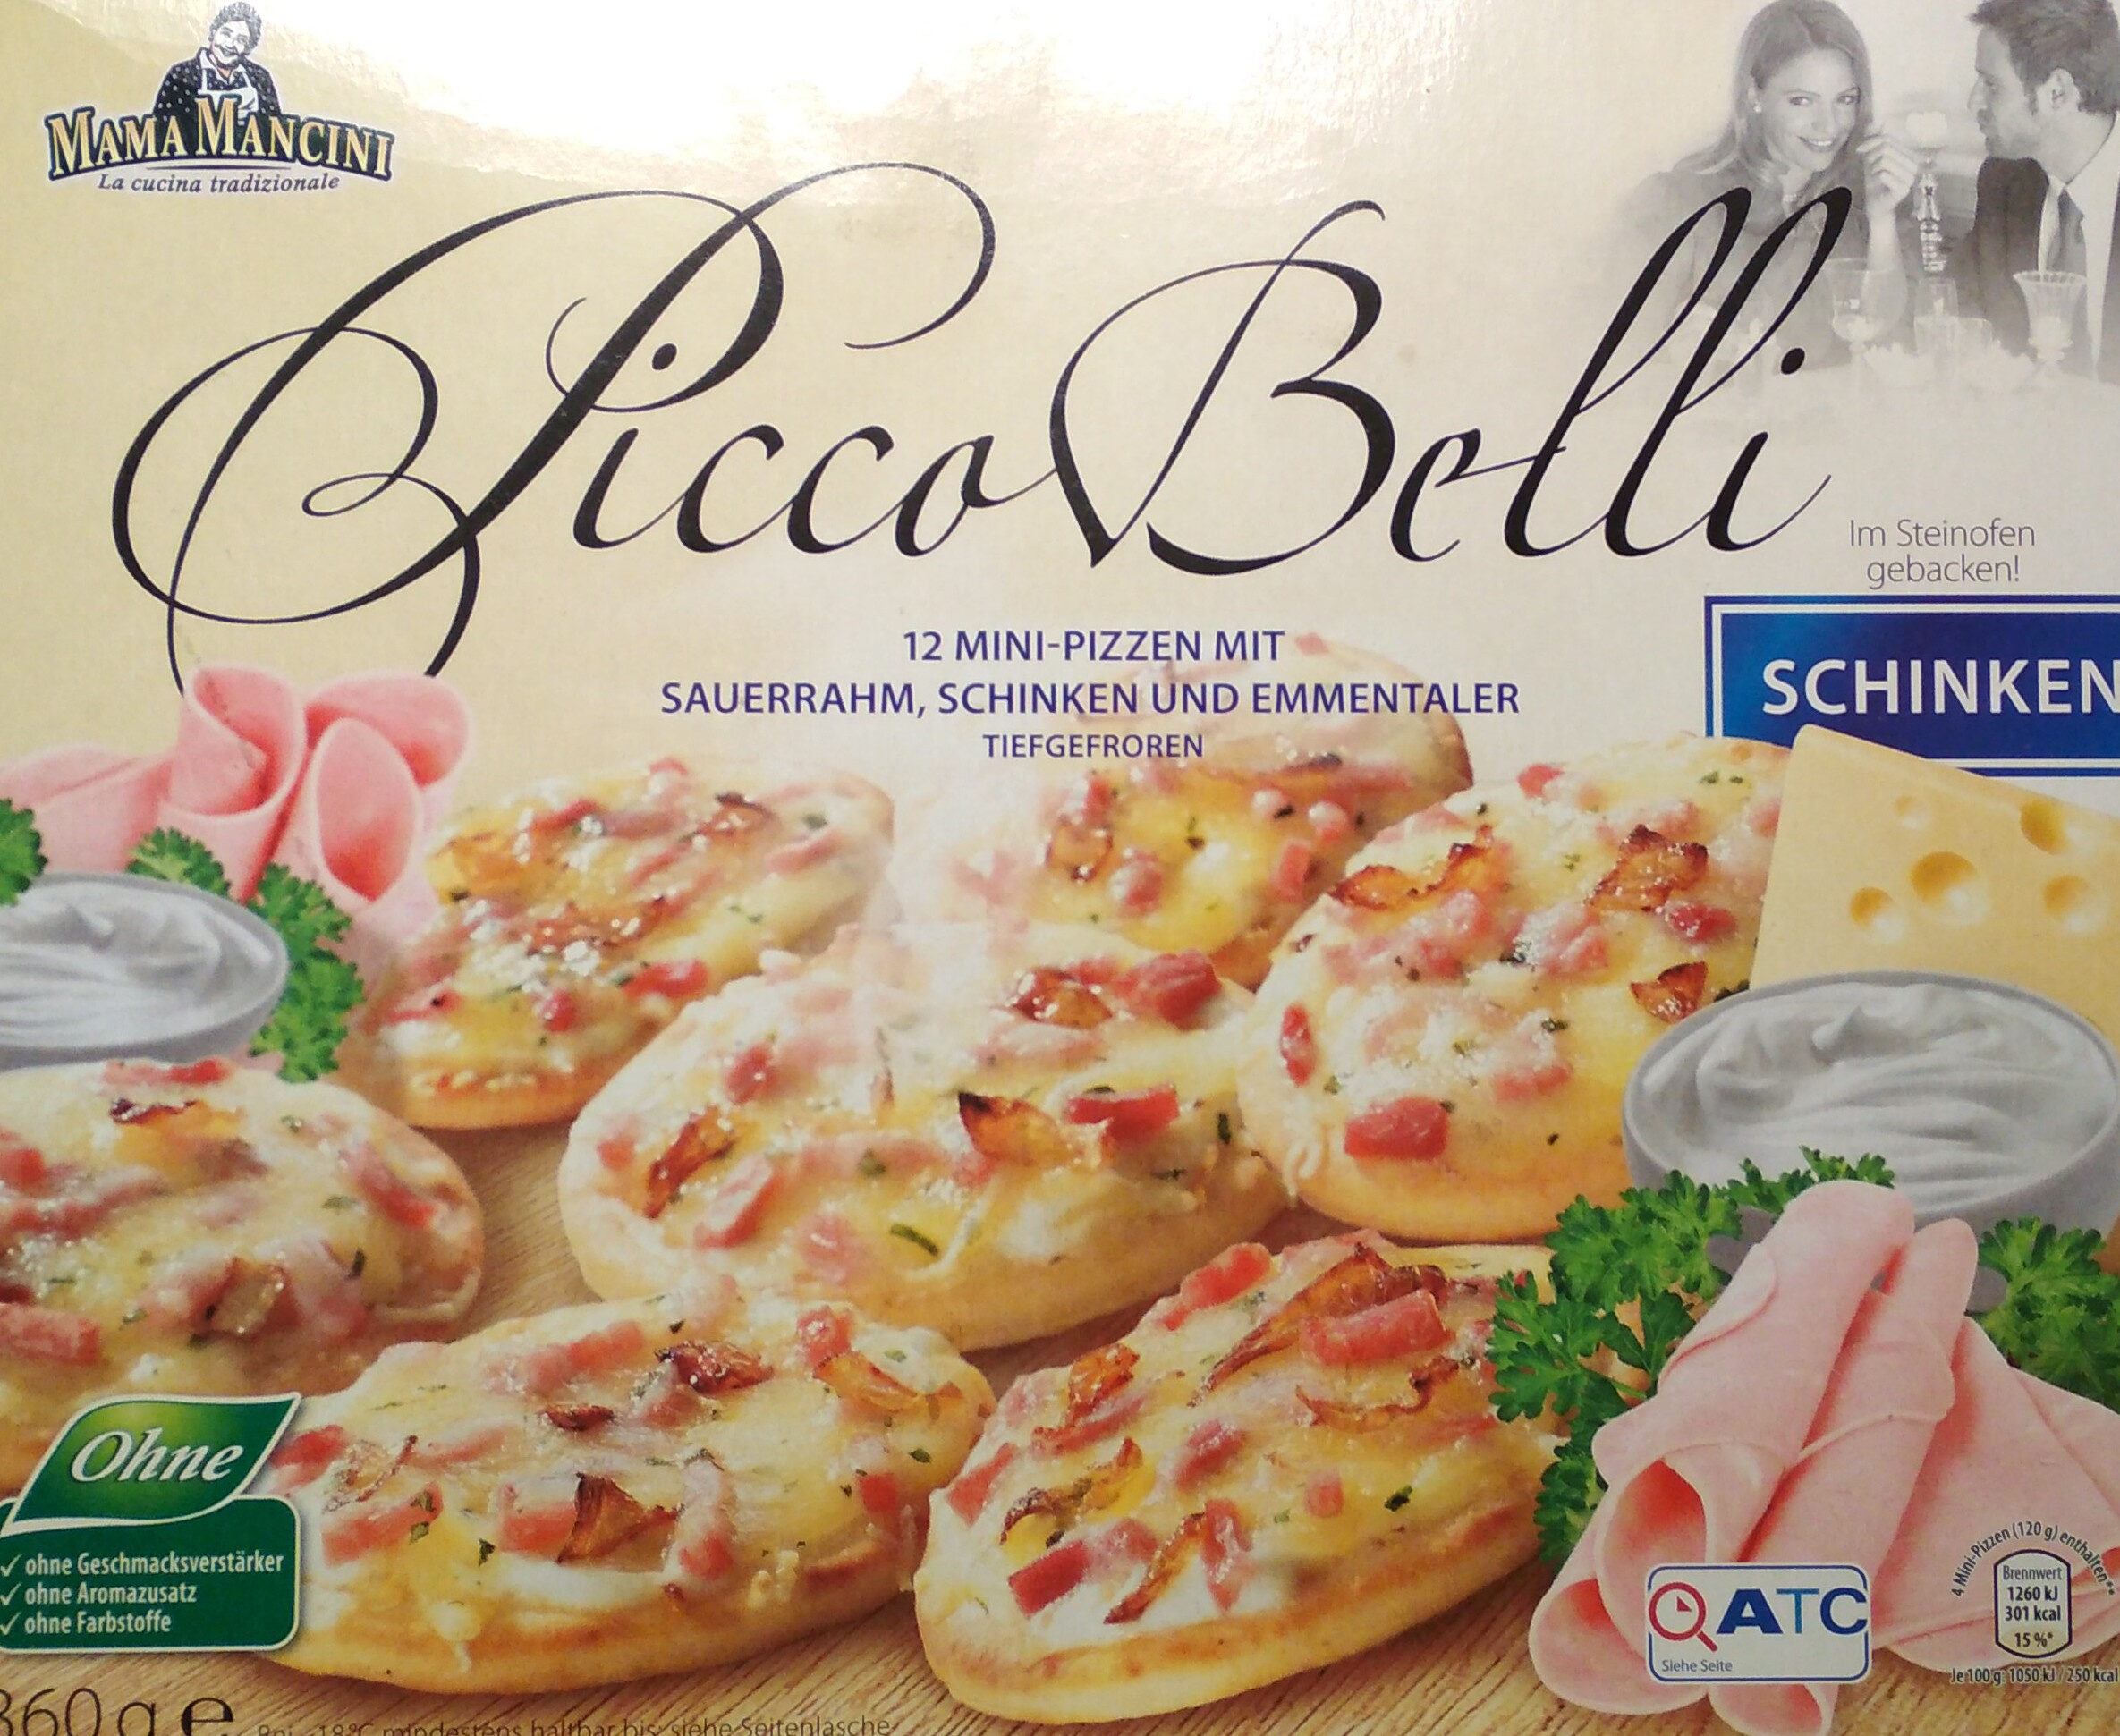 Picco Belli Mini-Pizzen Schinken - Product - de